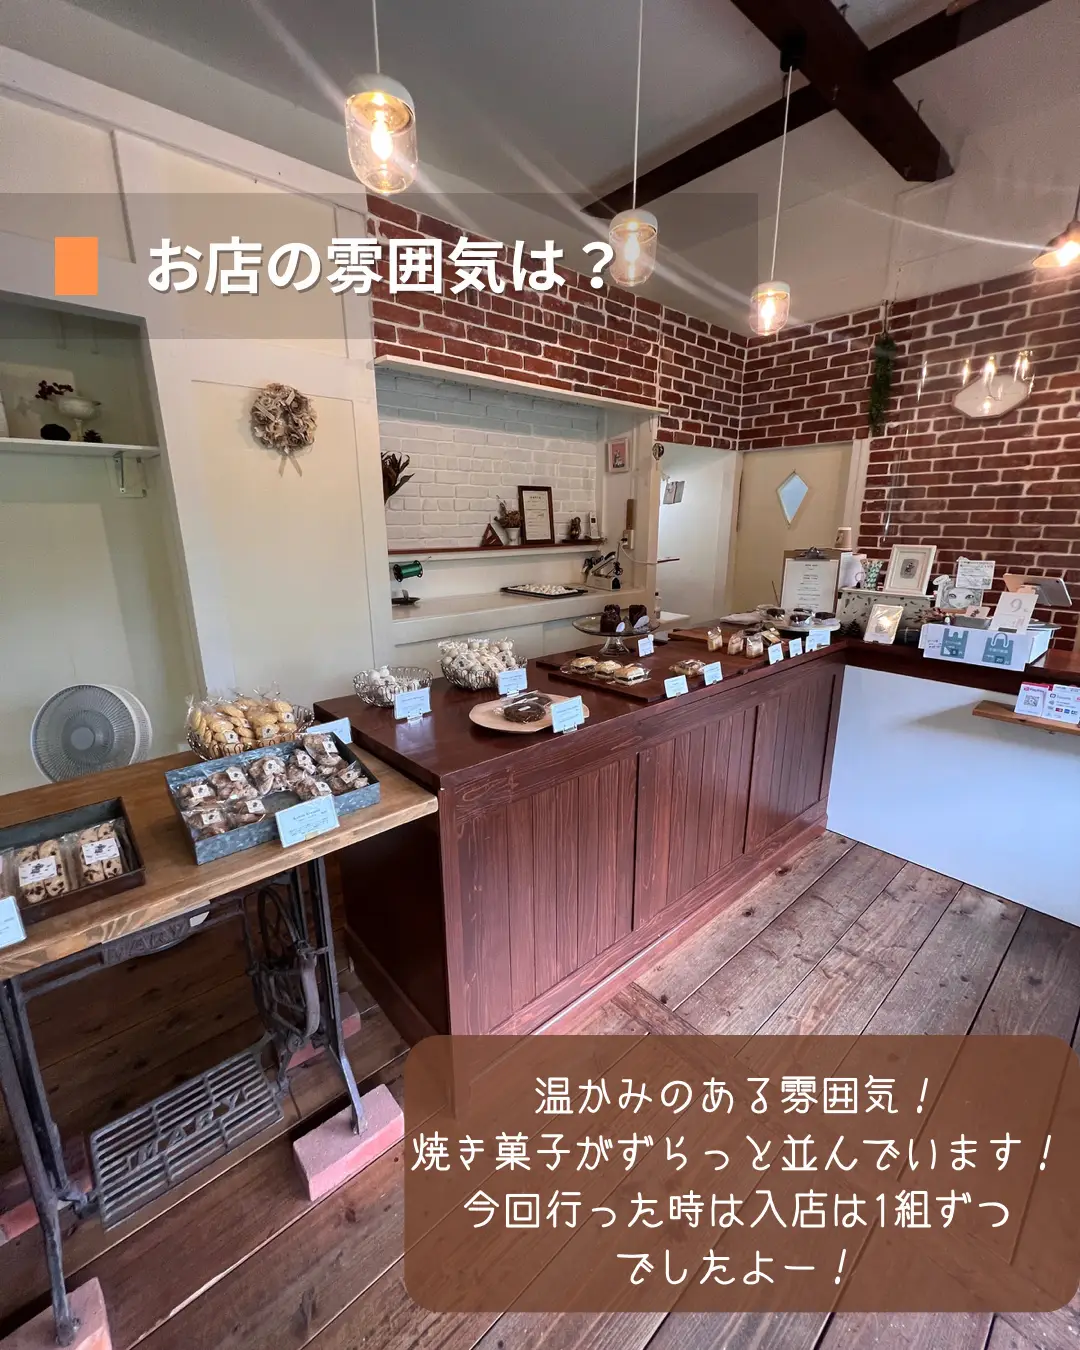 【沖縄】山奥にひっそり佇む焼き菓子のお店「Himbeere（ヒムベーレ）菓子店」の画像 (3枚目)